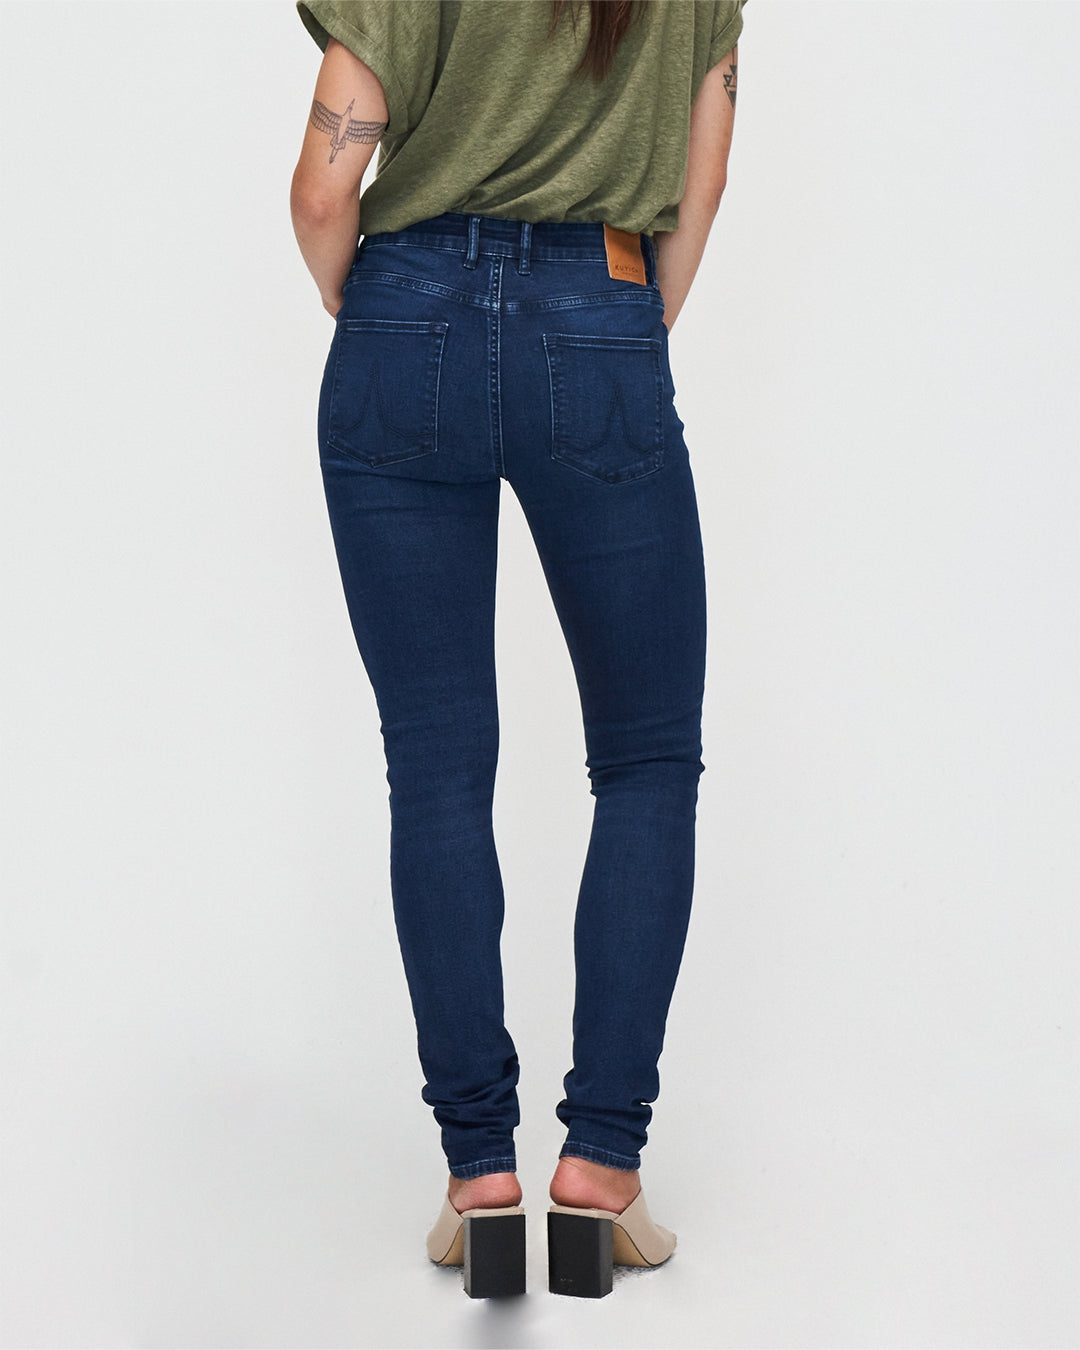 Jeans Carey Skinny in True Blue aus Bio - Baumwolle von Kuyichi